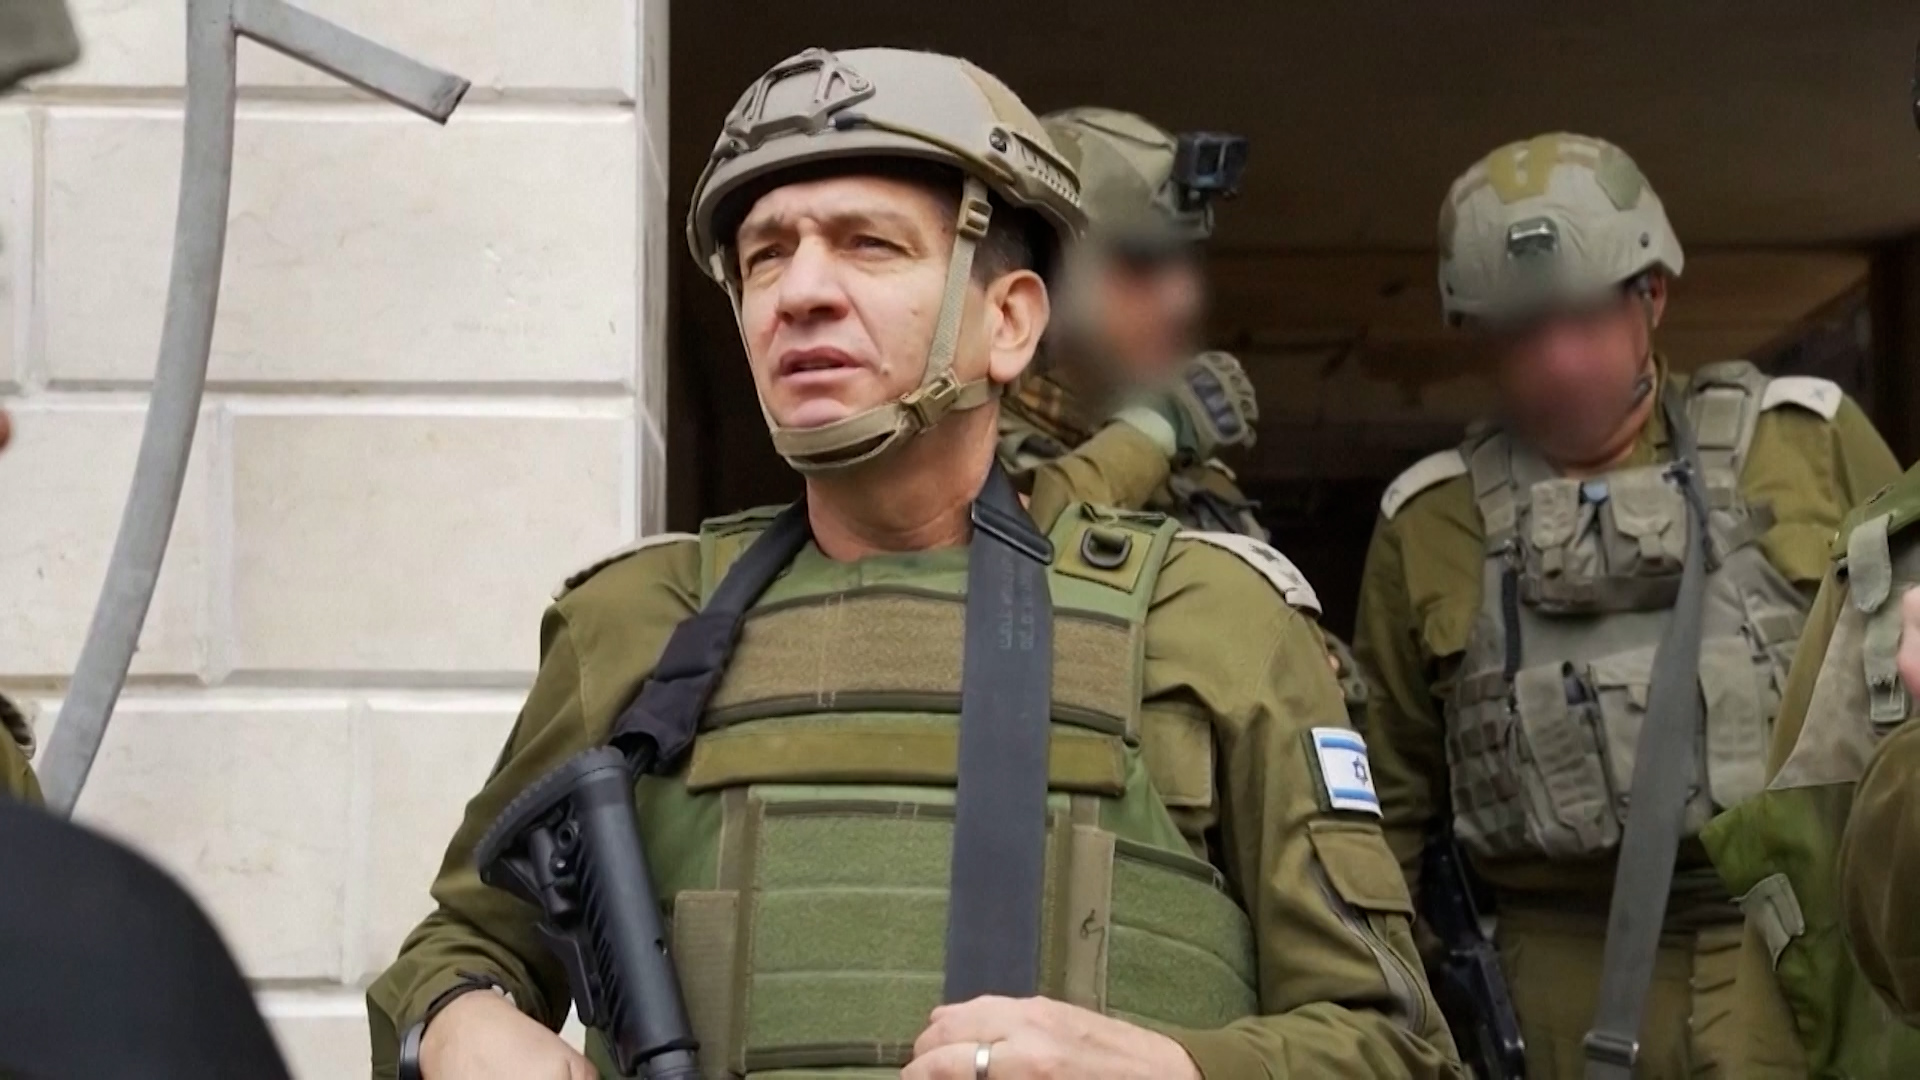 استقالة حاليفا.. كرة ثلج تتدحرج في الجيش الإسرائيلي | سياسة – البوكس نيوز